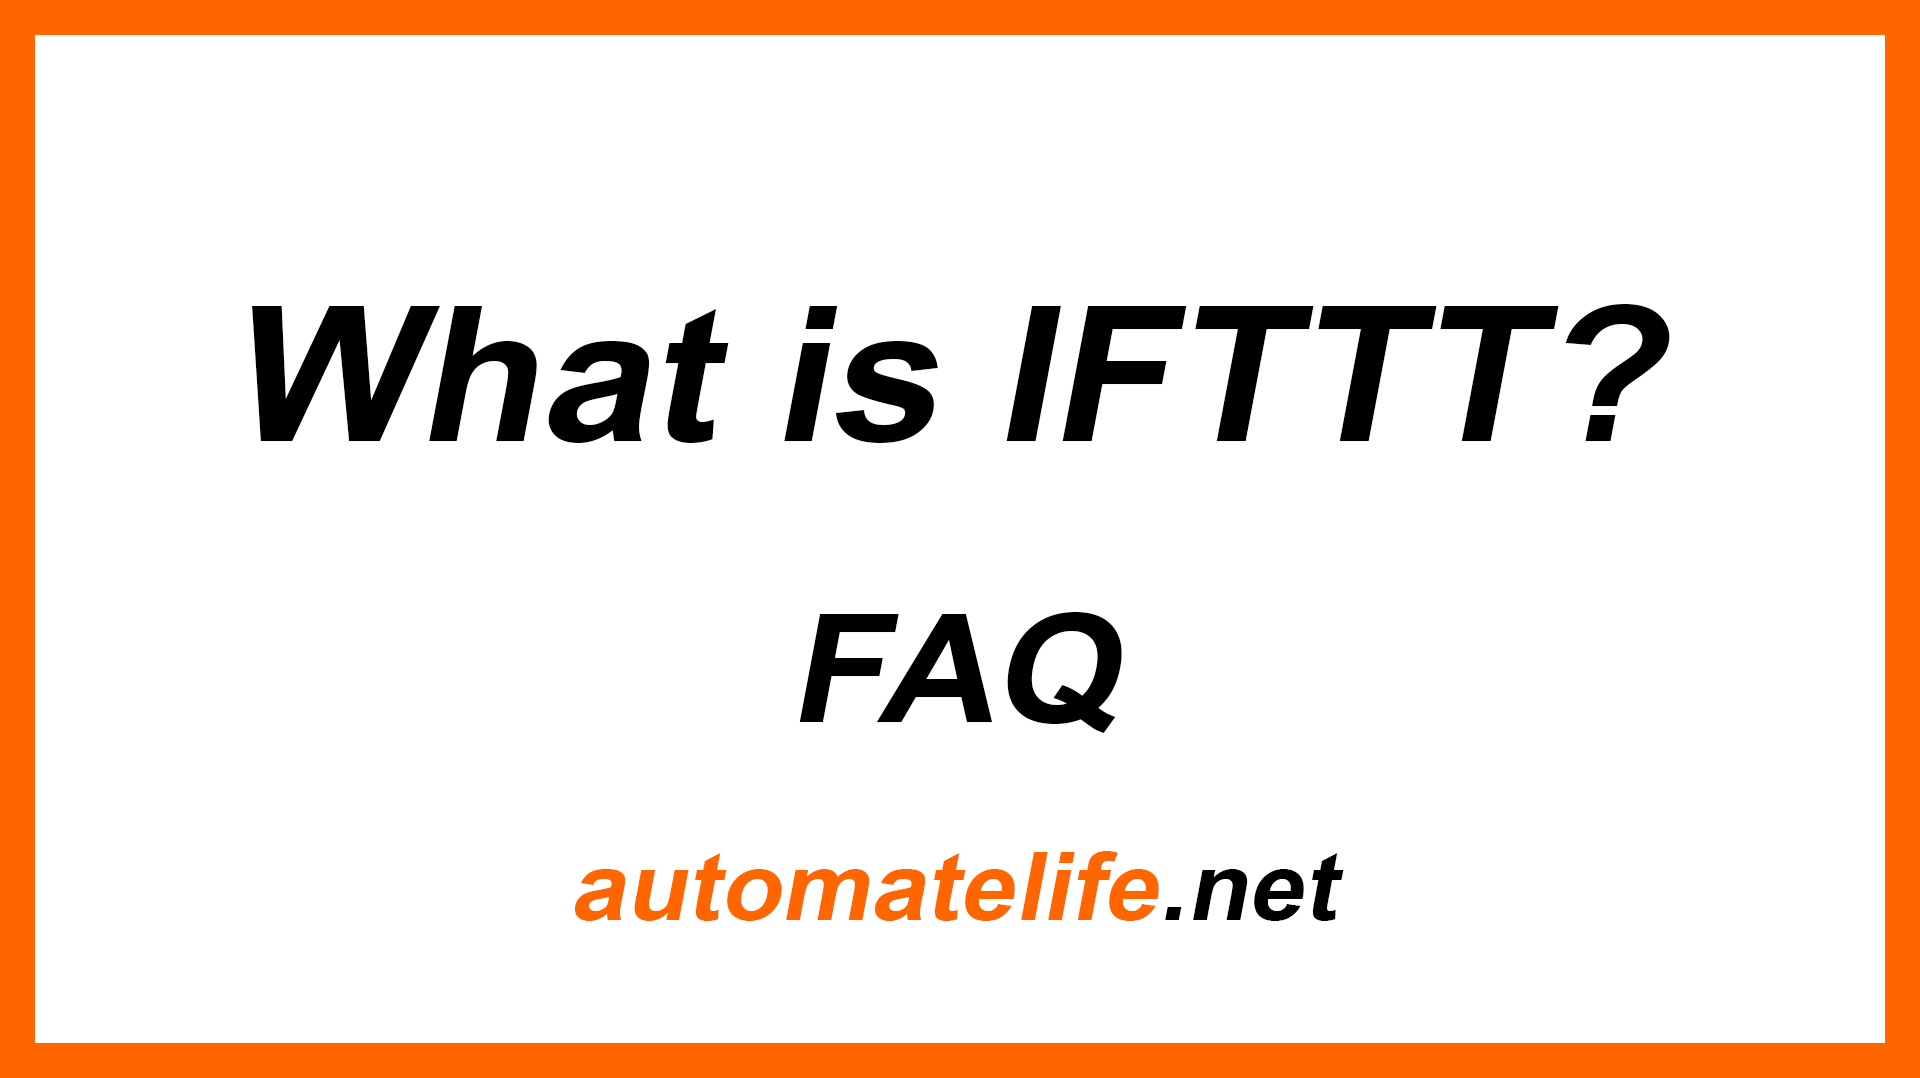 Slide: What is IFTTT? FAQ